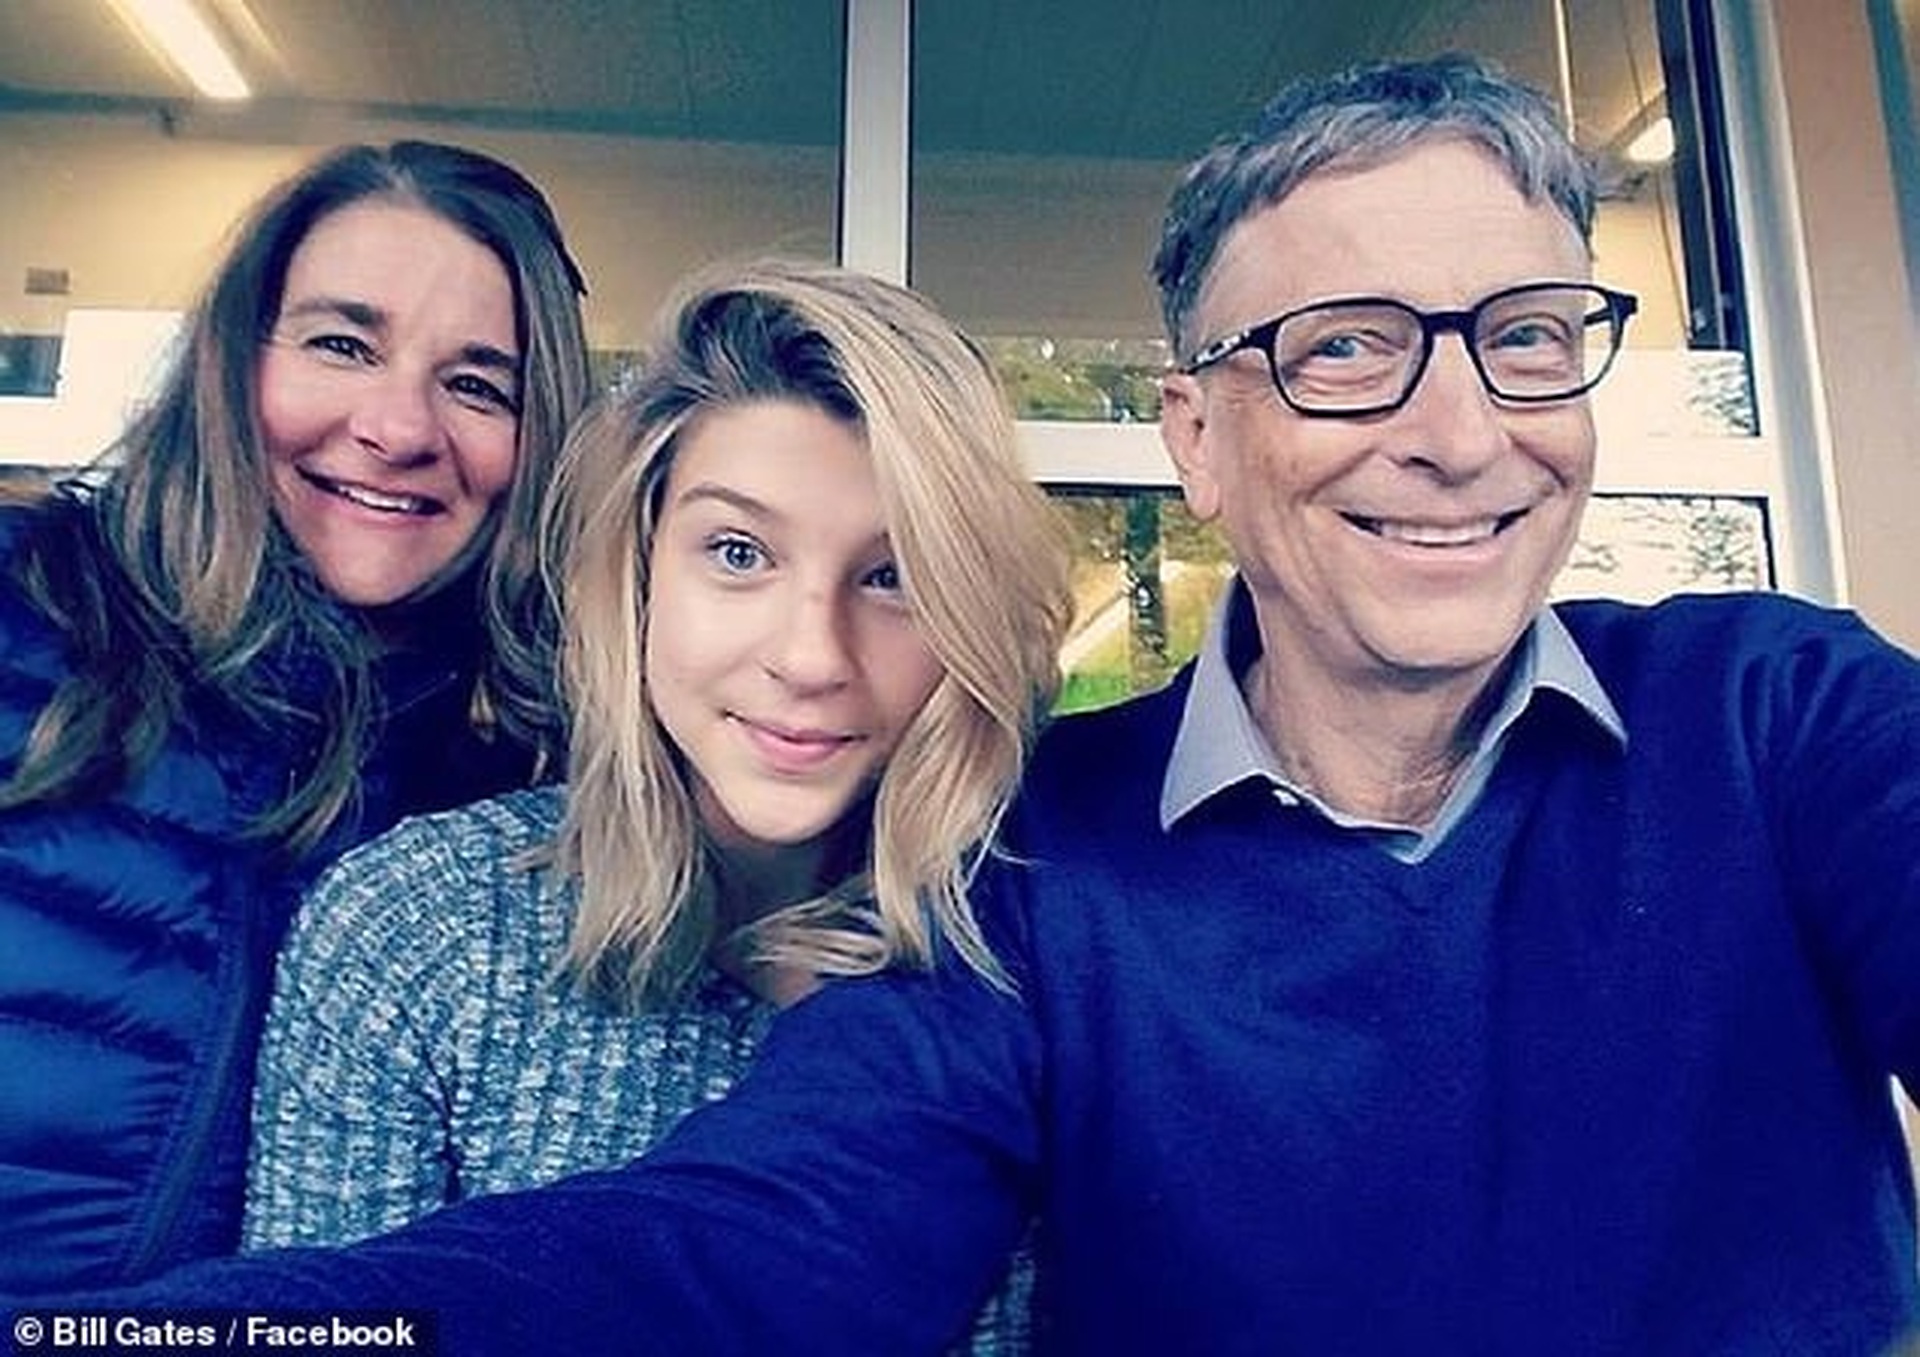 21 tuổi, cô út xinh đẹp nhà tỷ phú Bill Gates chuẩn bị càn quét làng mốt - 15